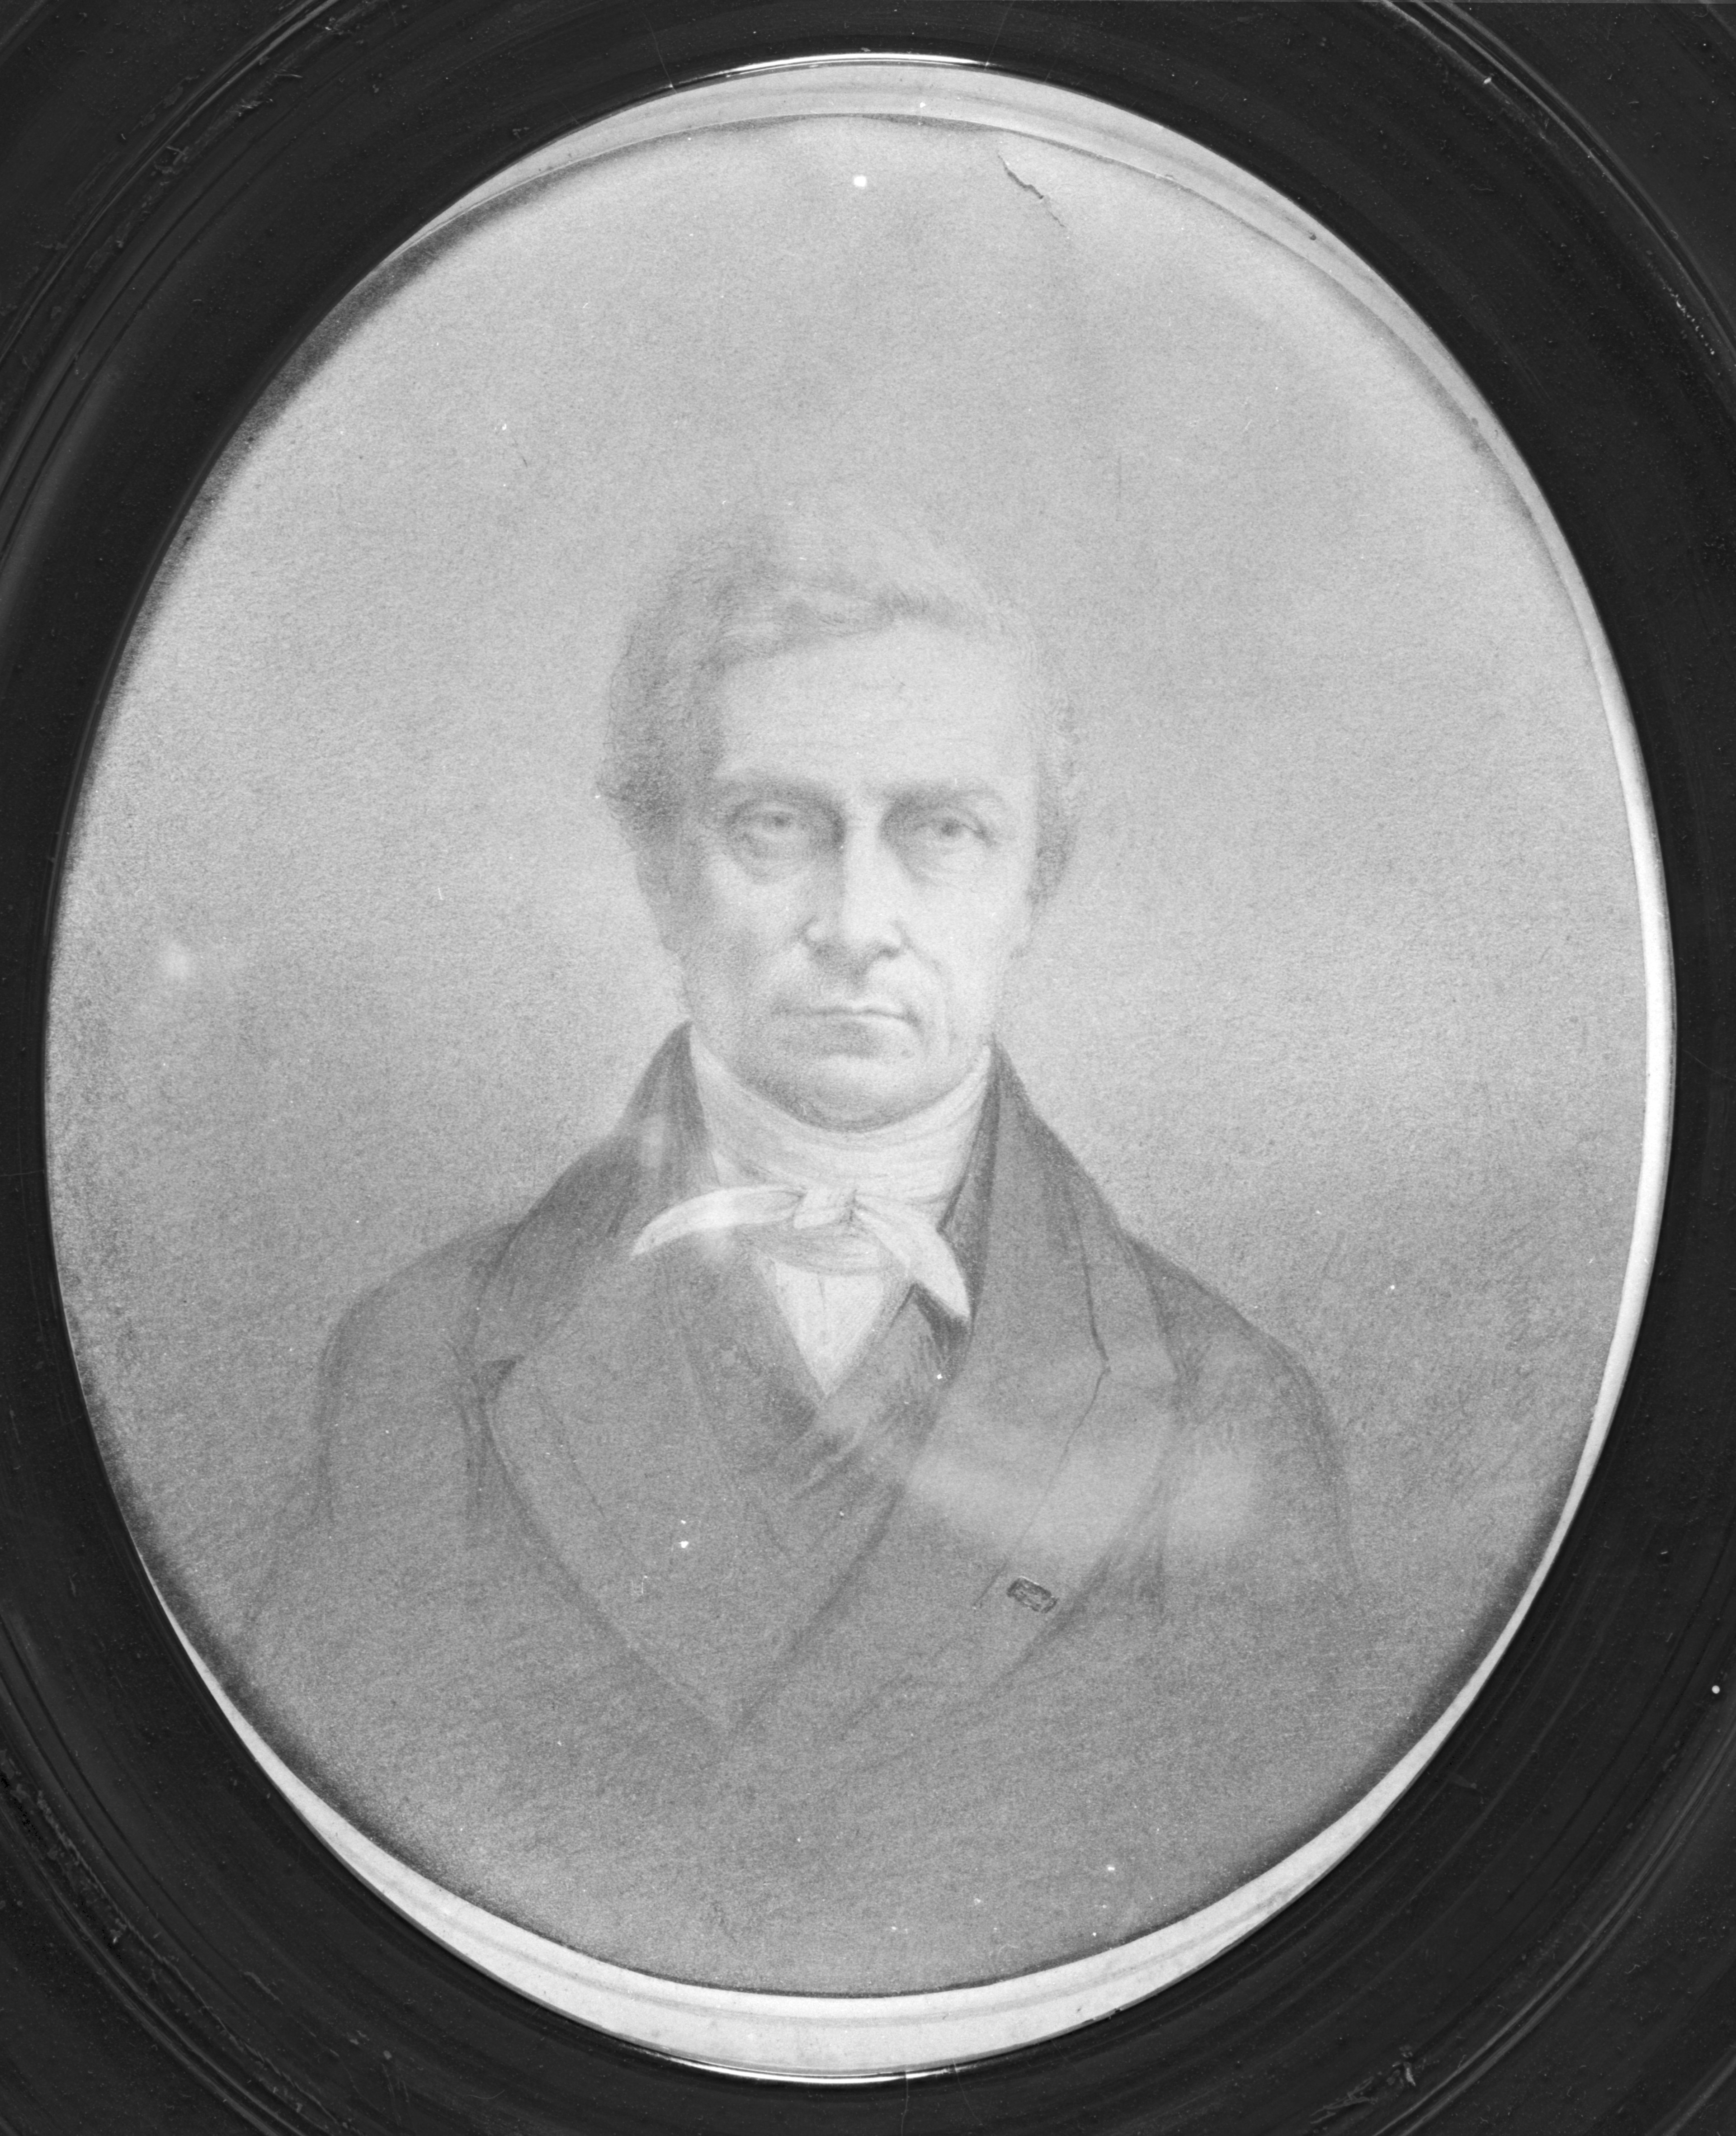  J.C. van der Meer Mohr, burgemeester tot 1852. Origineel fam. Van der Meer Mohr.